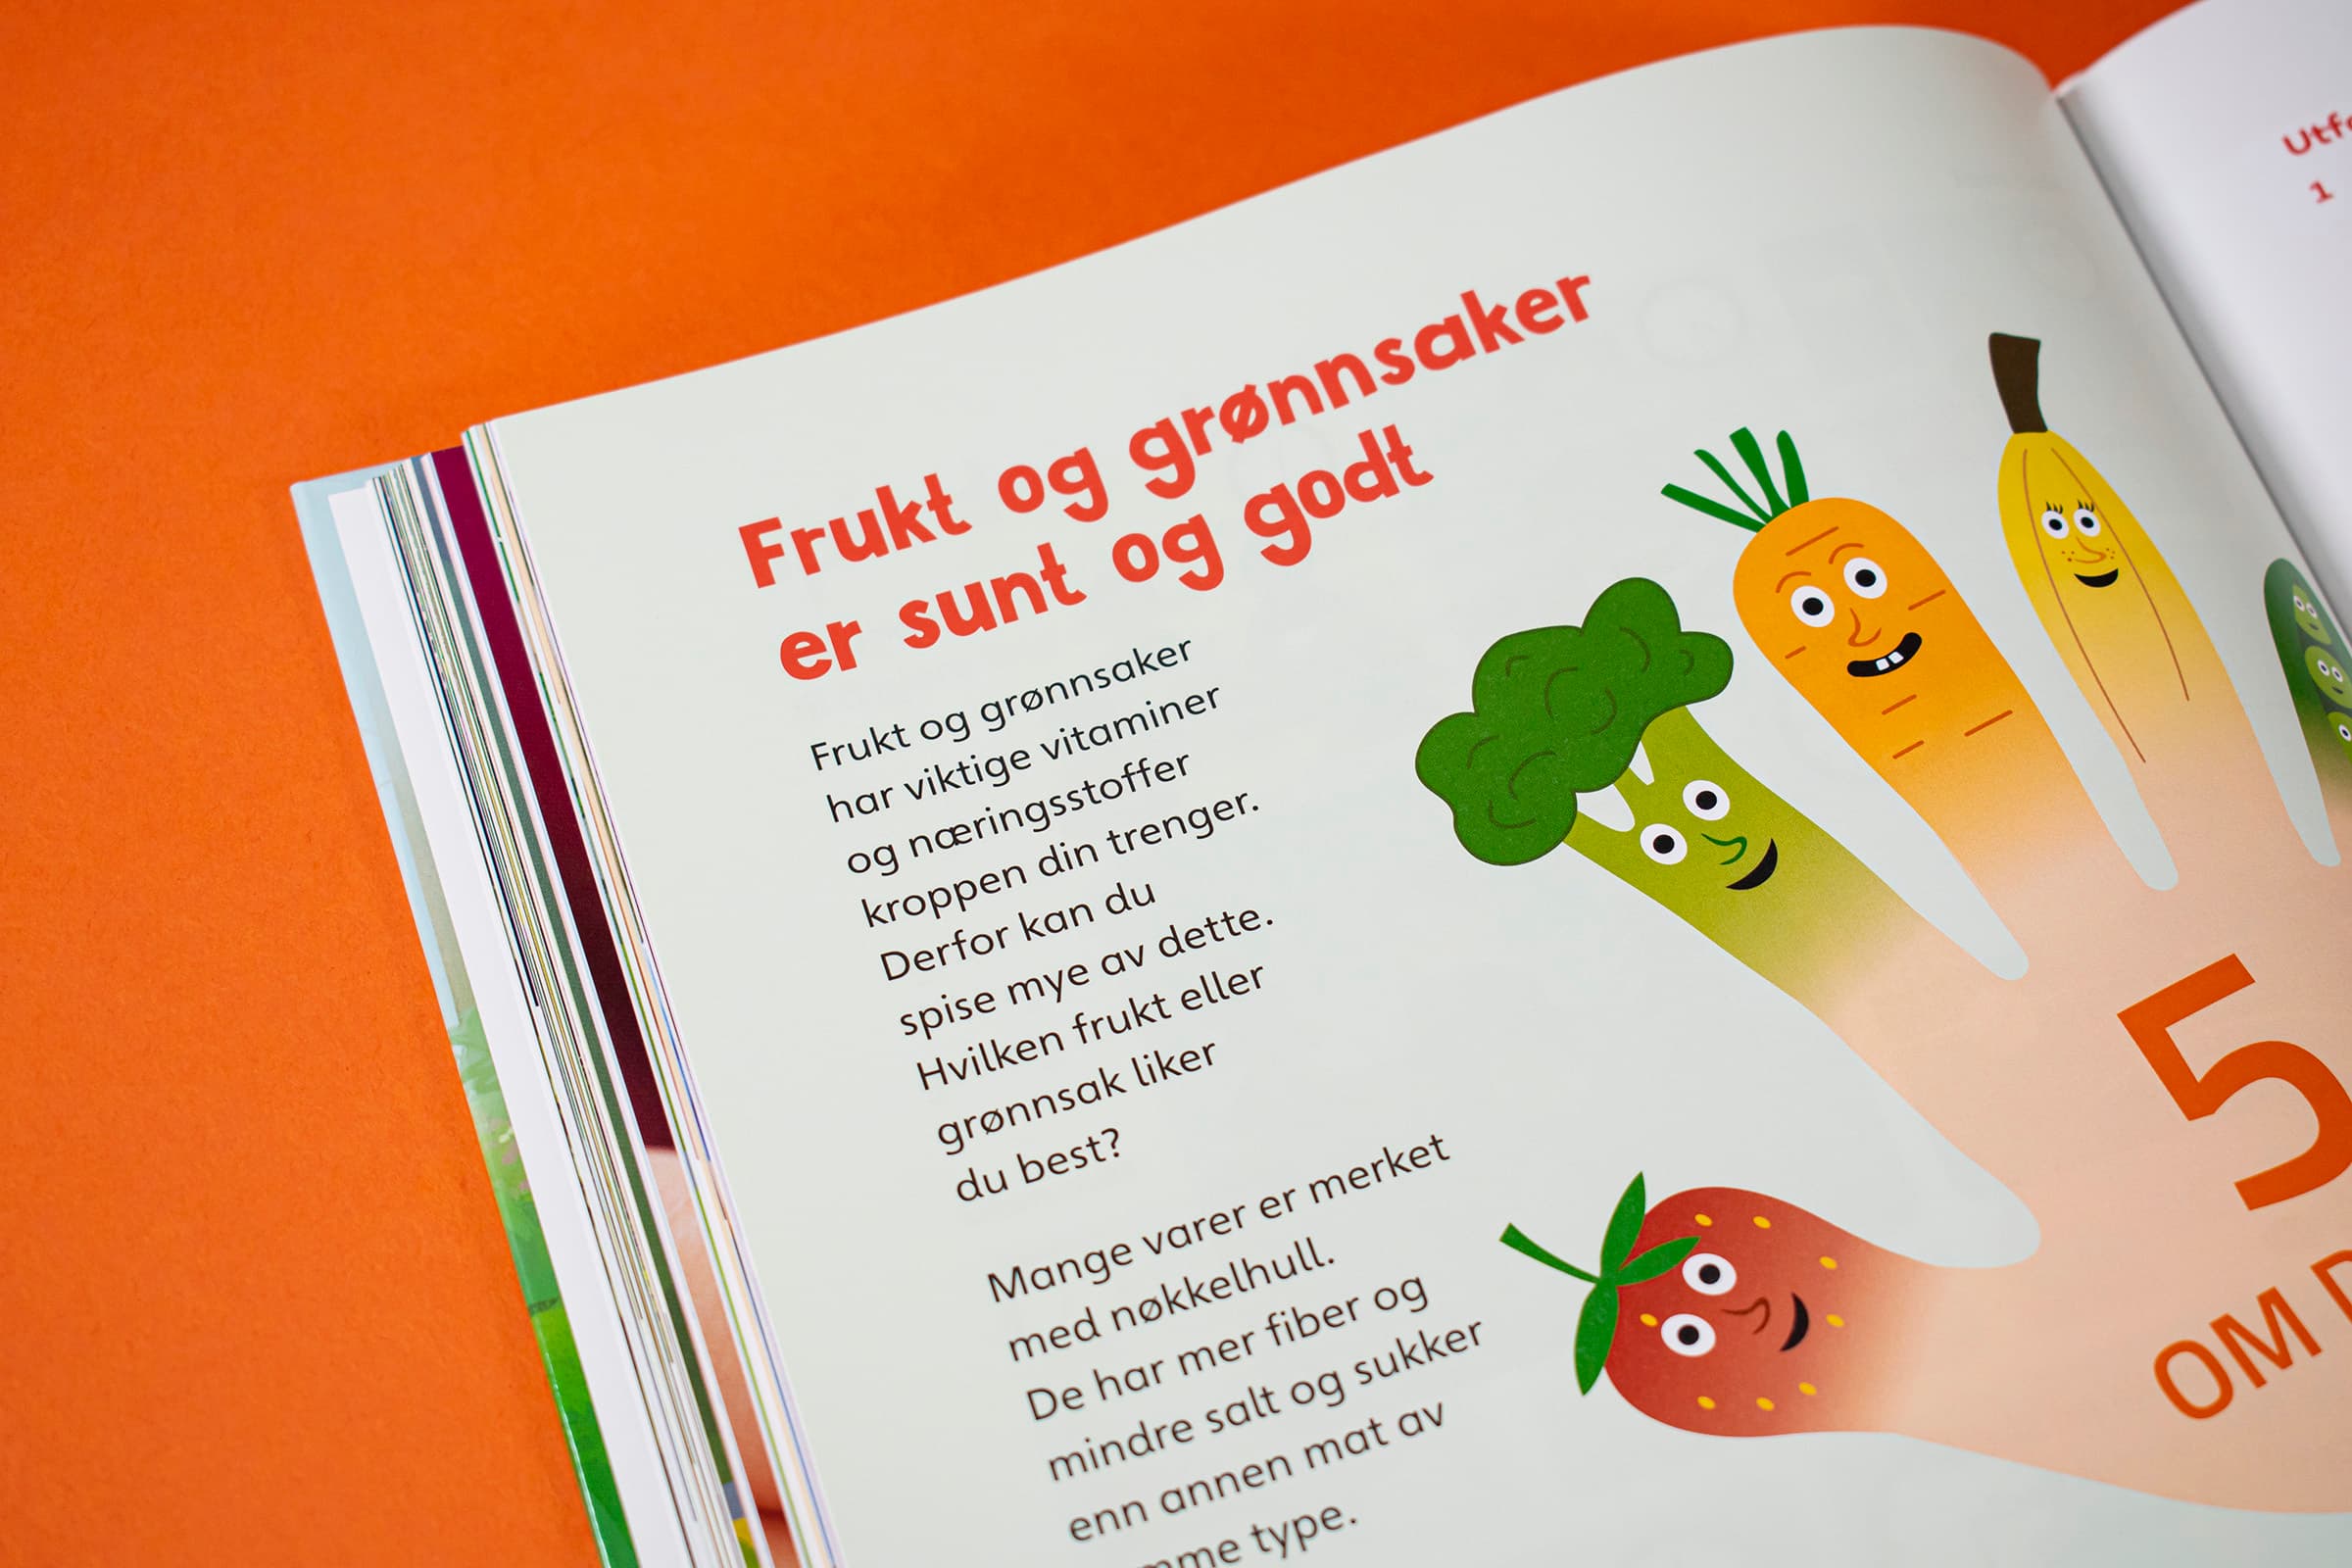 Et detaljfoto av tittelen "Frukt og grønt er sunt og godt".